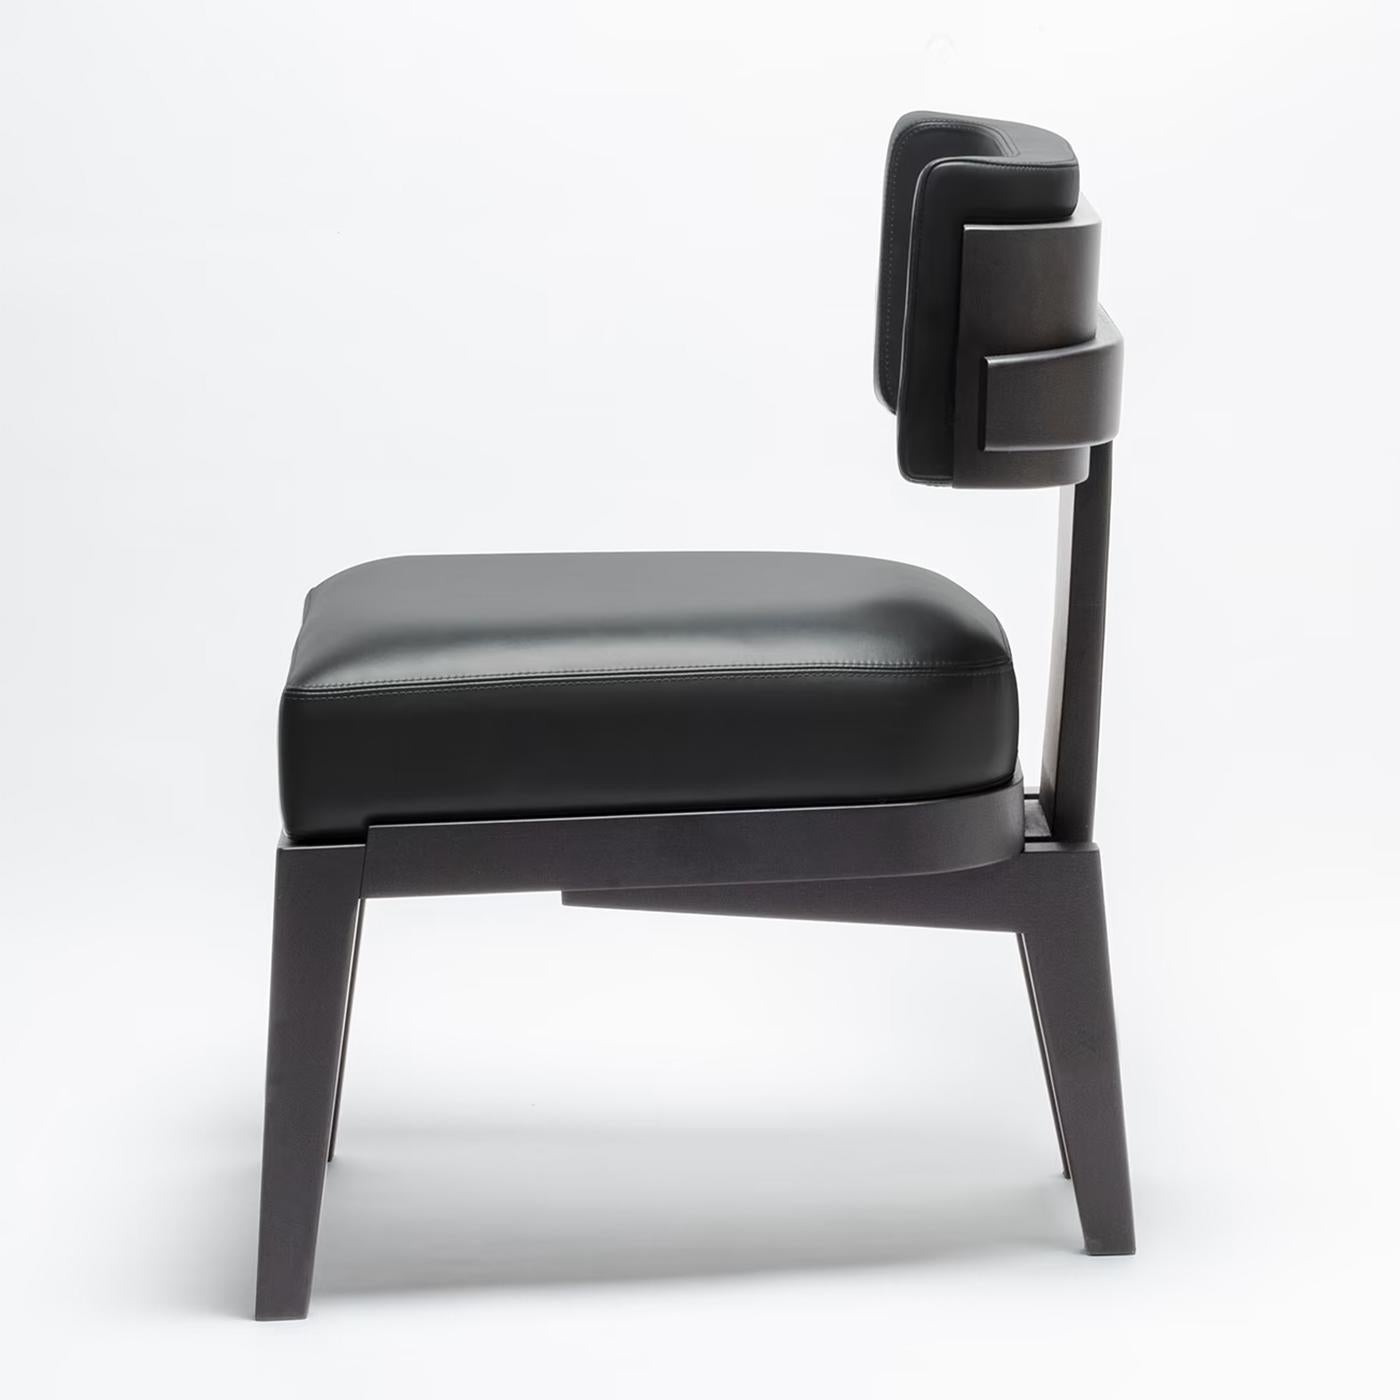 Chaise eloise noire avec structure en bois massif teinté.
Finition wengé, rembourré et recouvert de haute qualité. 
Cuir noir véritable.